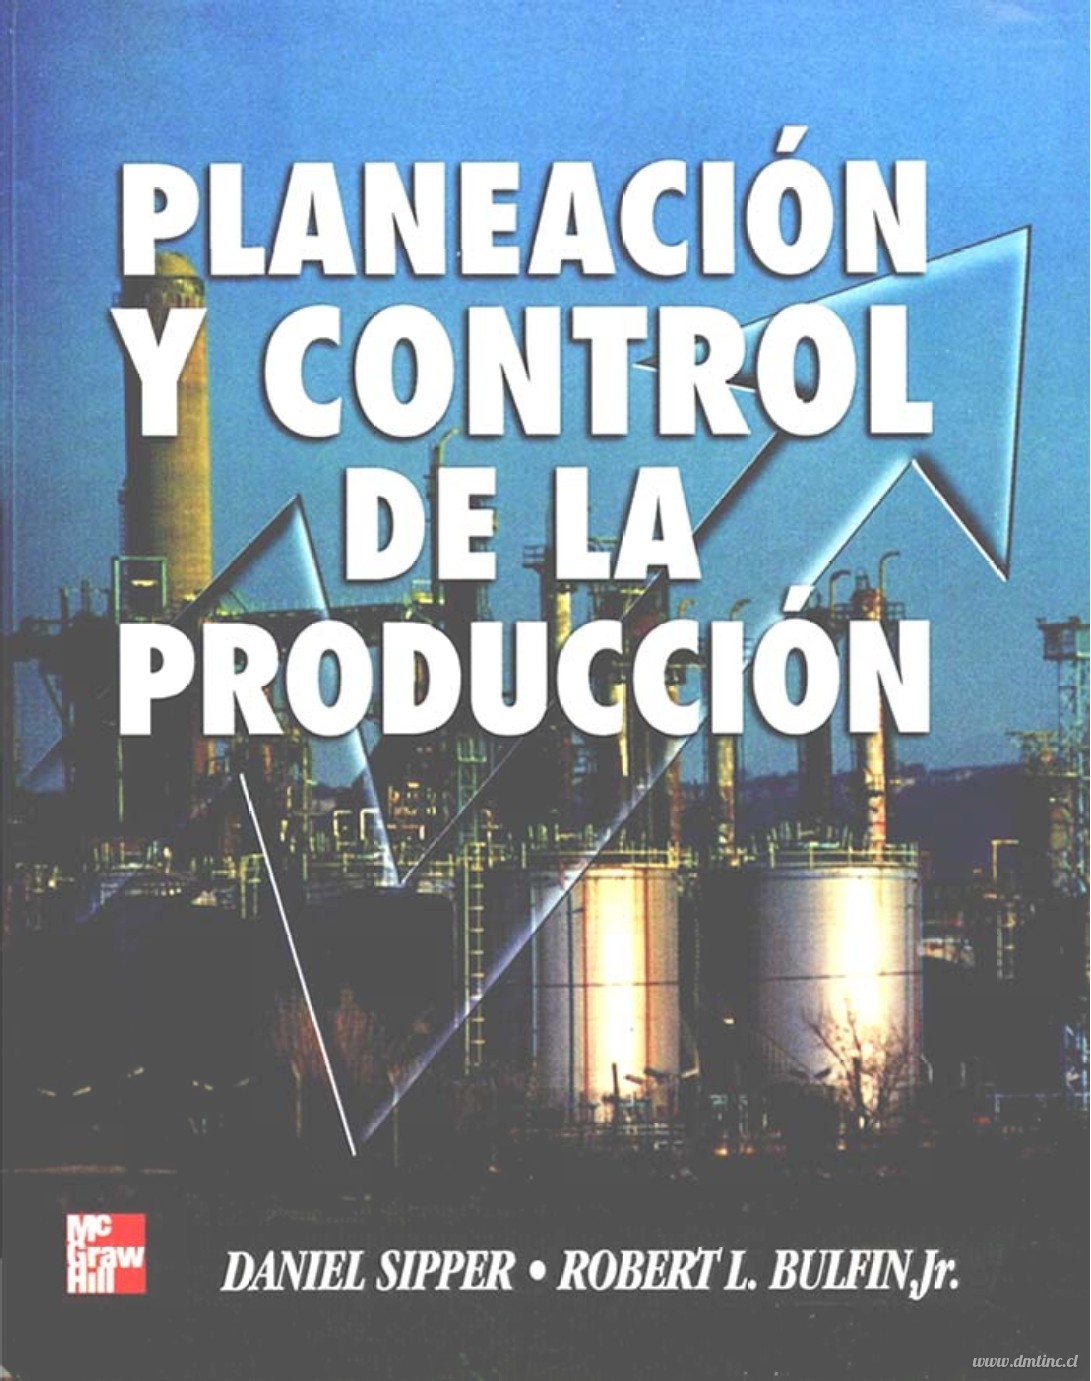 Planeacion Y Control De La Produccion Daniel Sipper Tecnohackers 5907